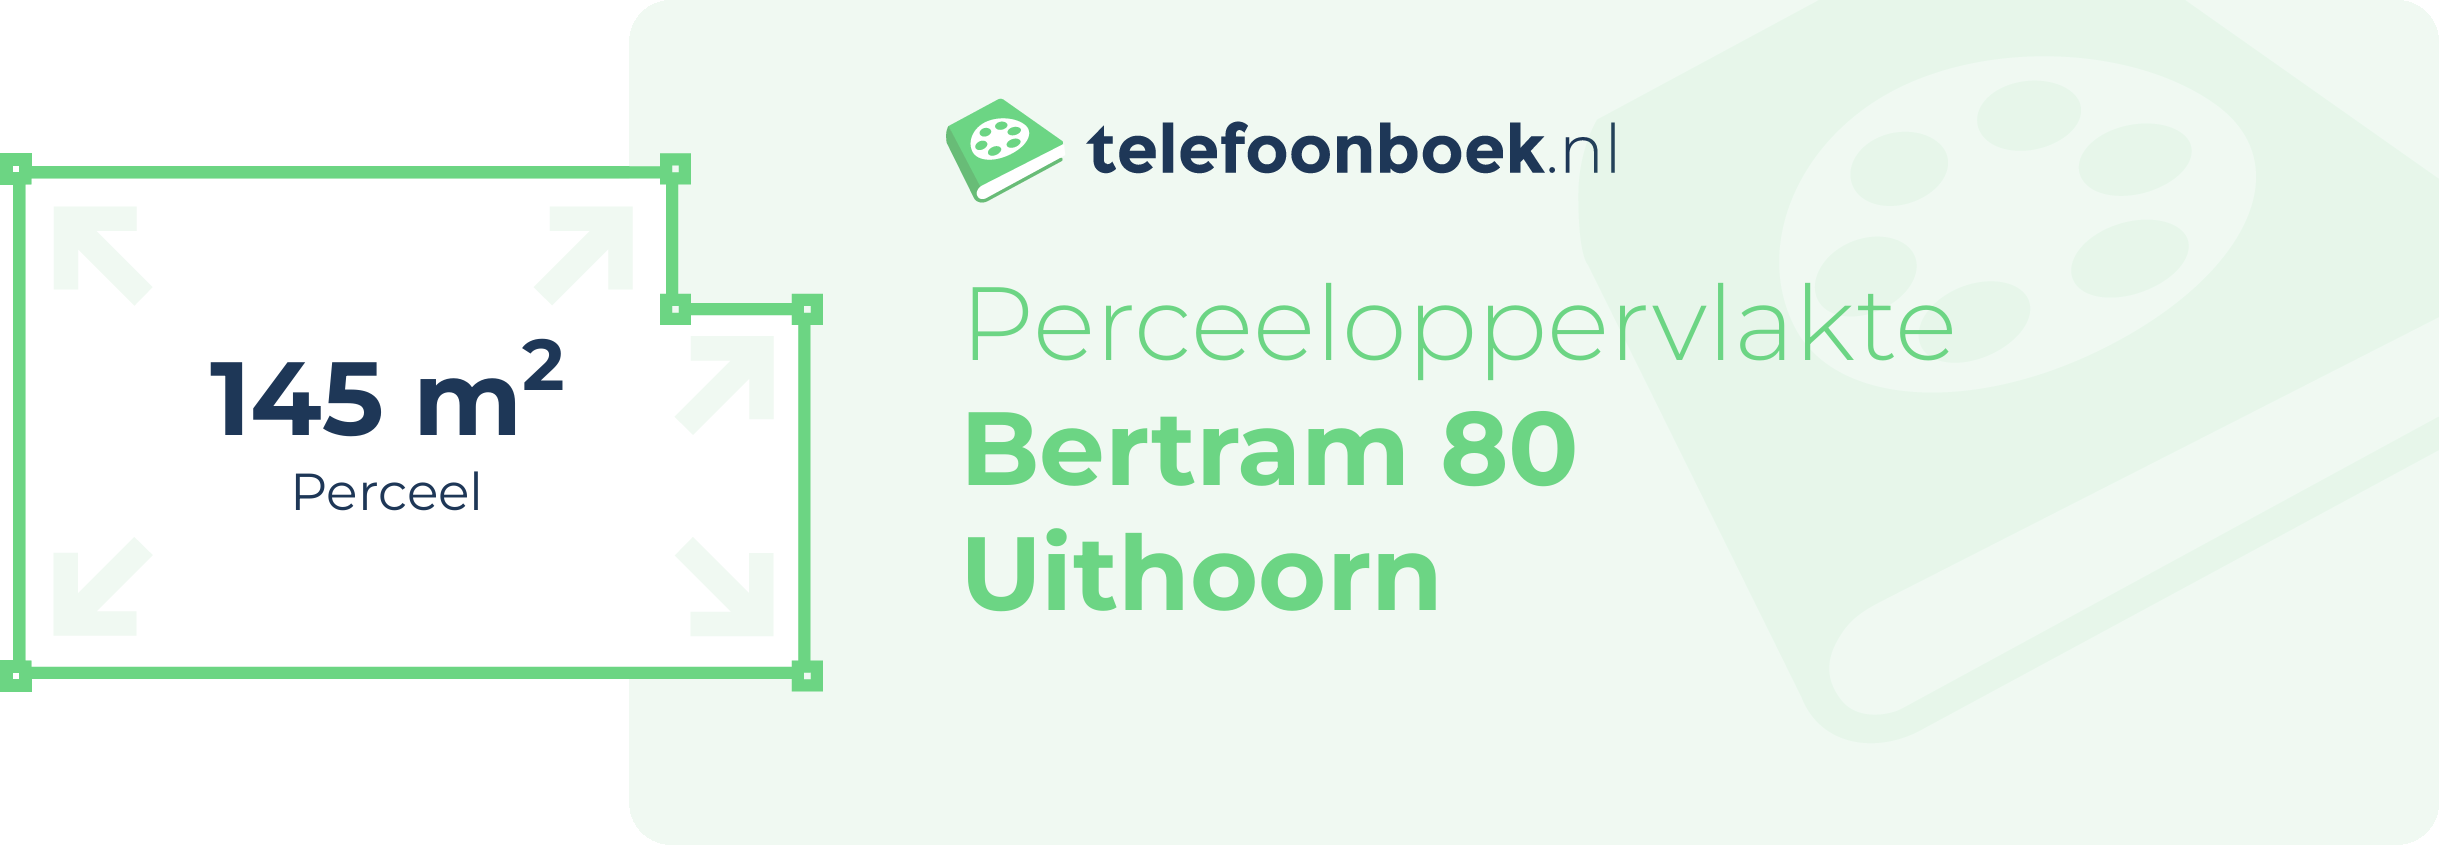 Perceeloppervlakte Bertram 80 Uithoorn